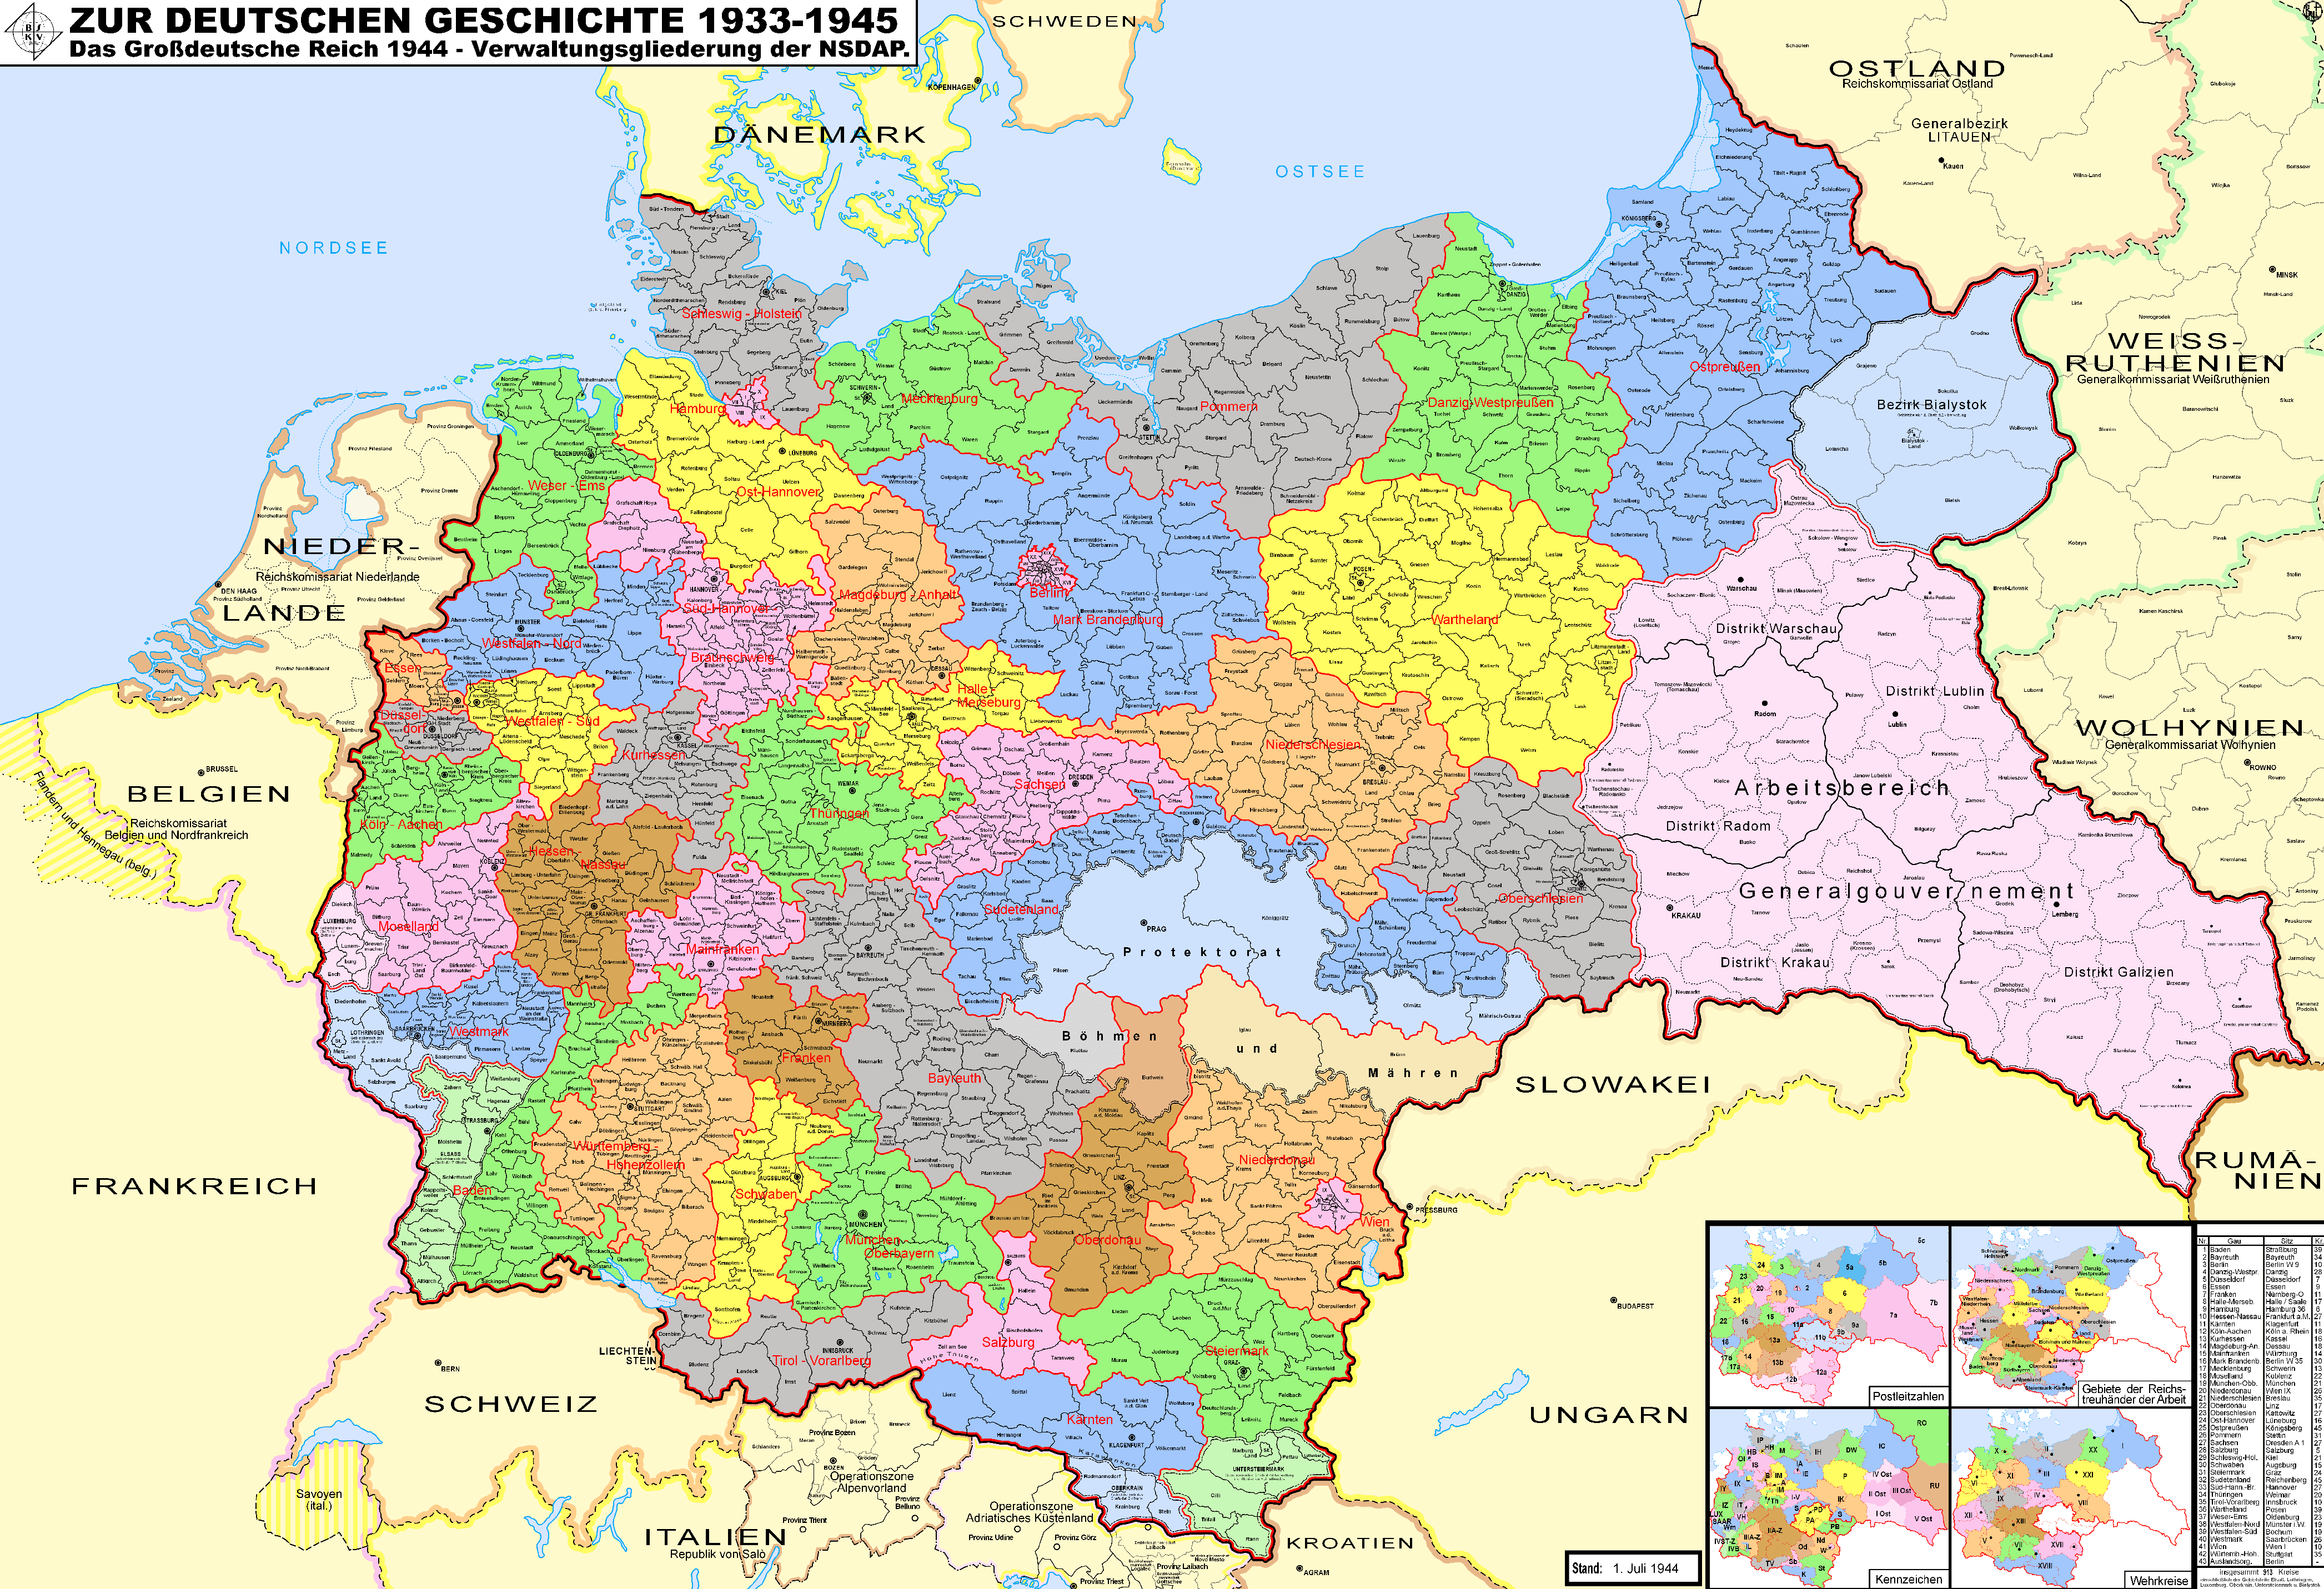 Third Reich Map 1944